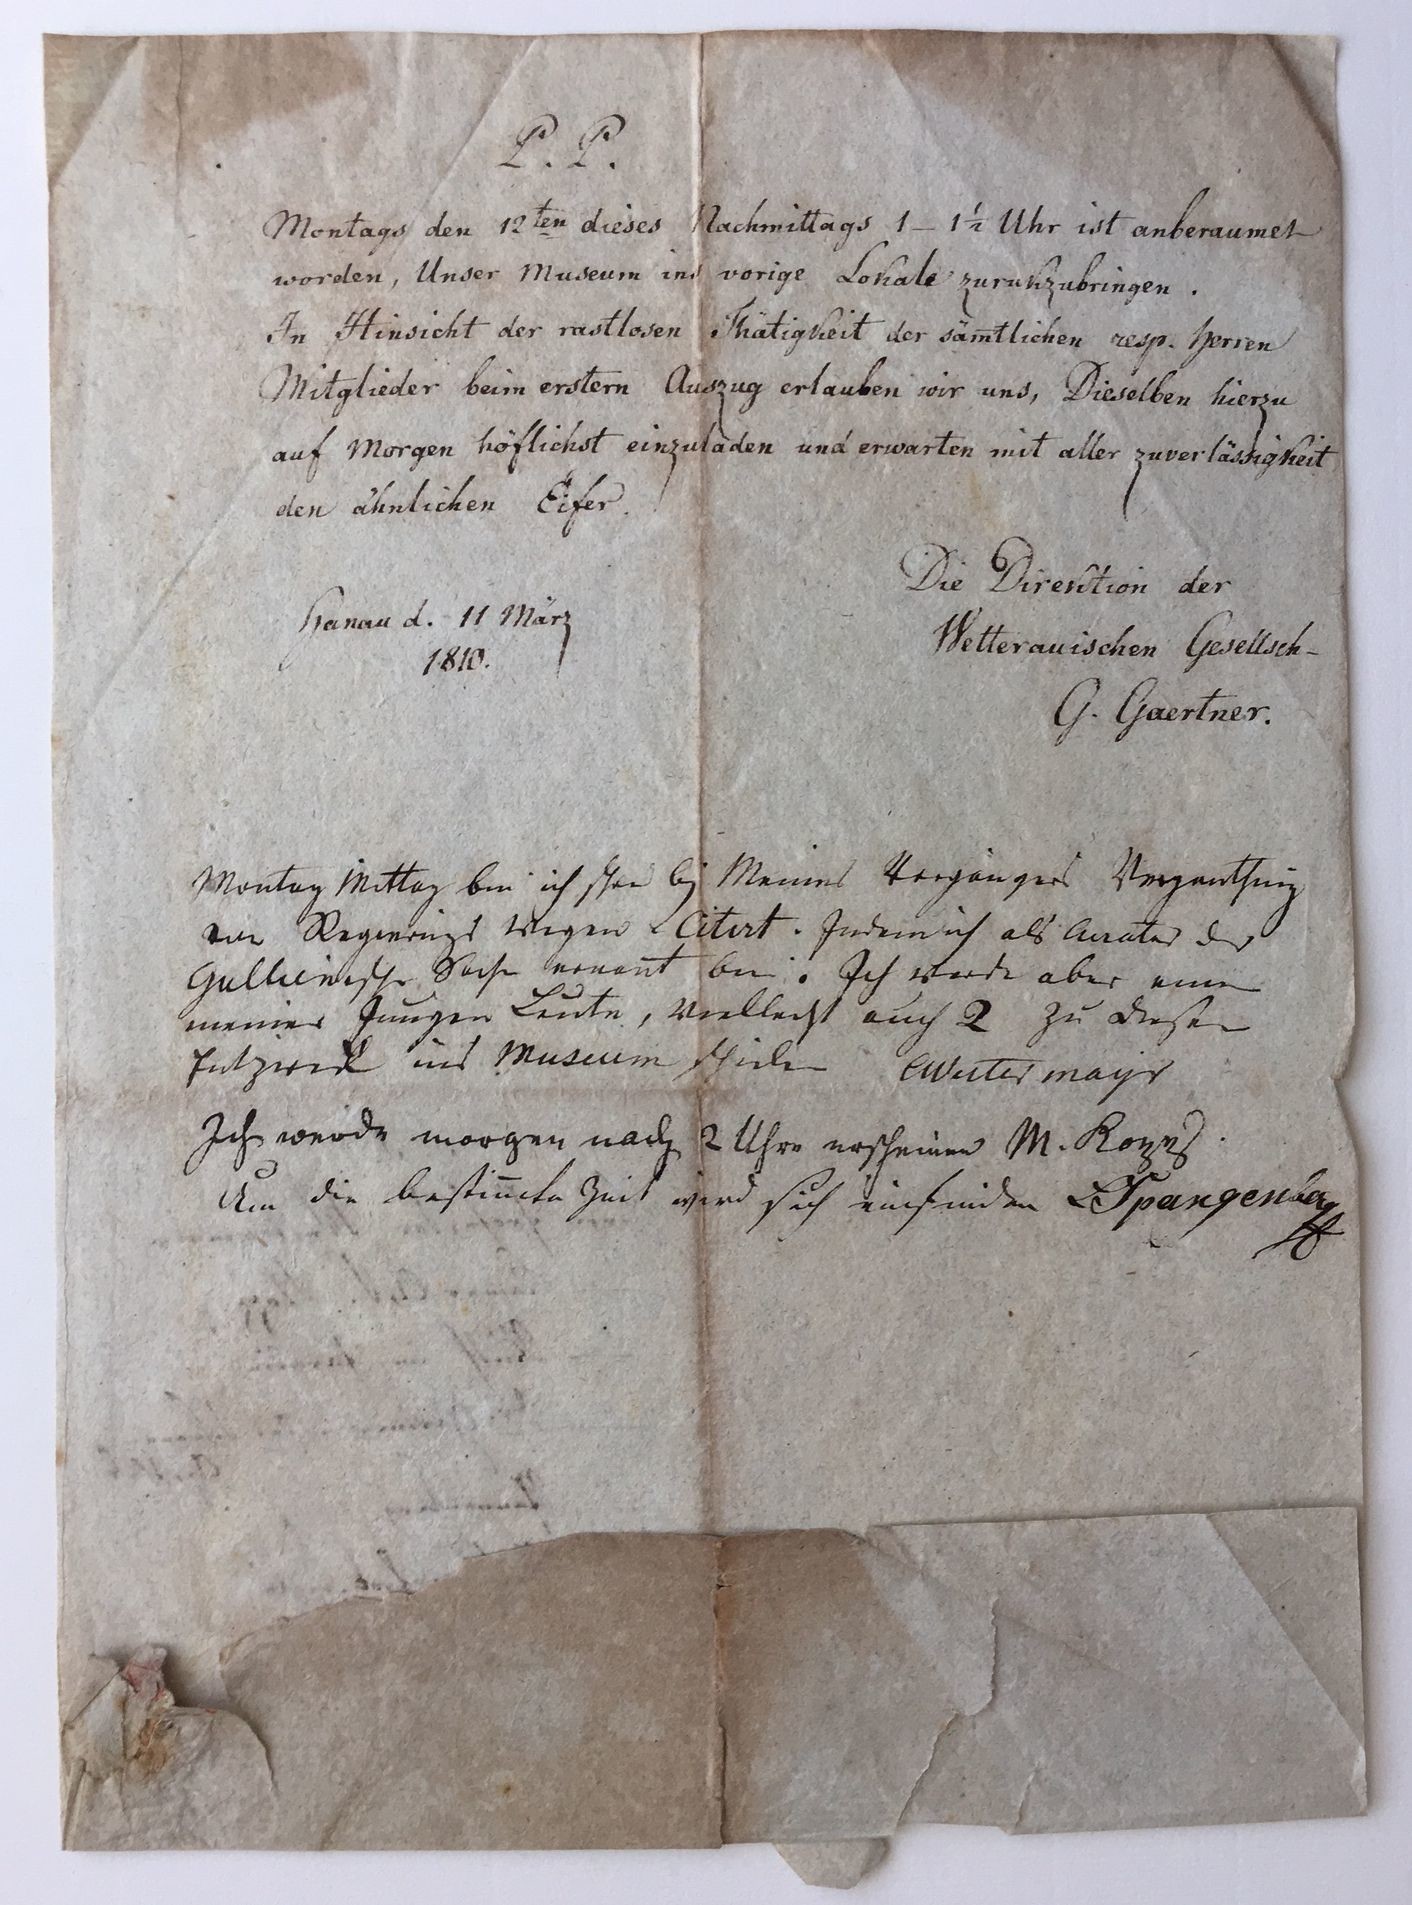 Wetterauische Gesellschaft, Handschriftliche Ladung von Dr. Gaertner, 11. März 1810. (Taunus-Rhein-Main - Regionalgeschichtliche Sammlung Dr. Stefan Naas CC BY-NC-SA)